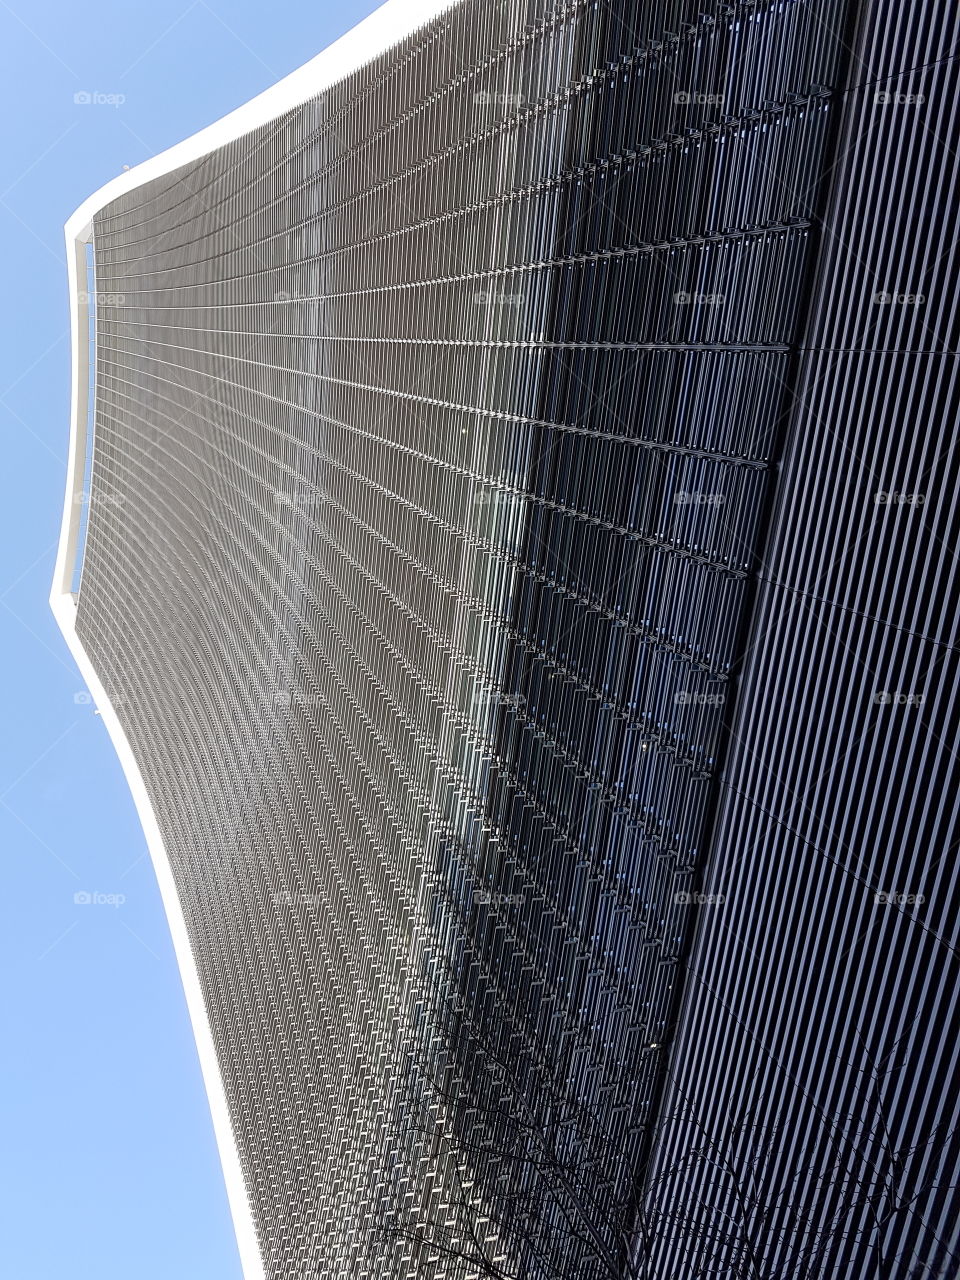 The "Walkie-Talkie" seen below, a skyscraper designed by Rafael Viñoly. London, UK.